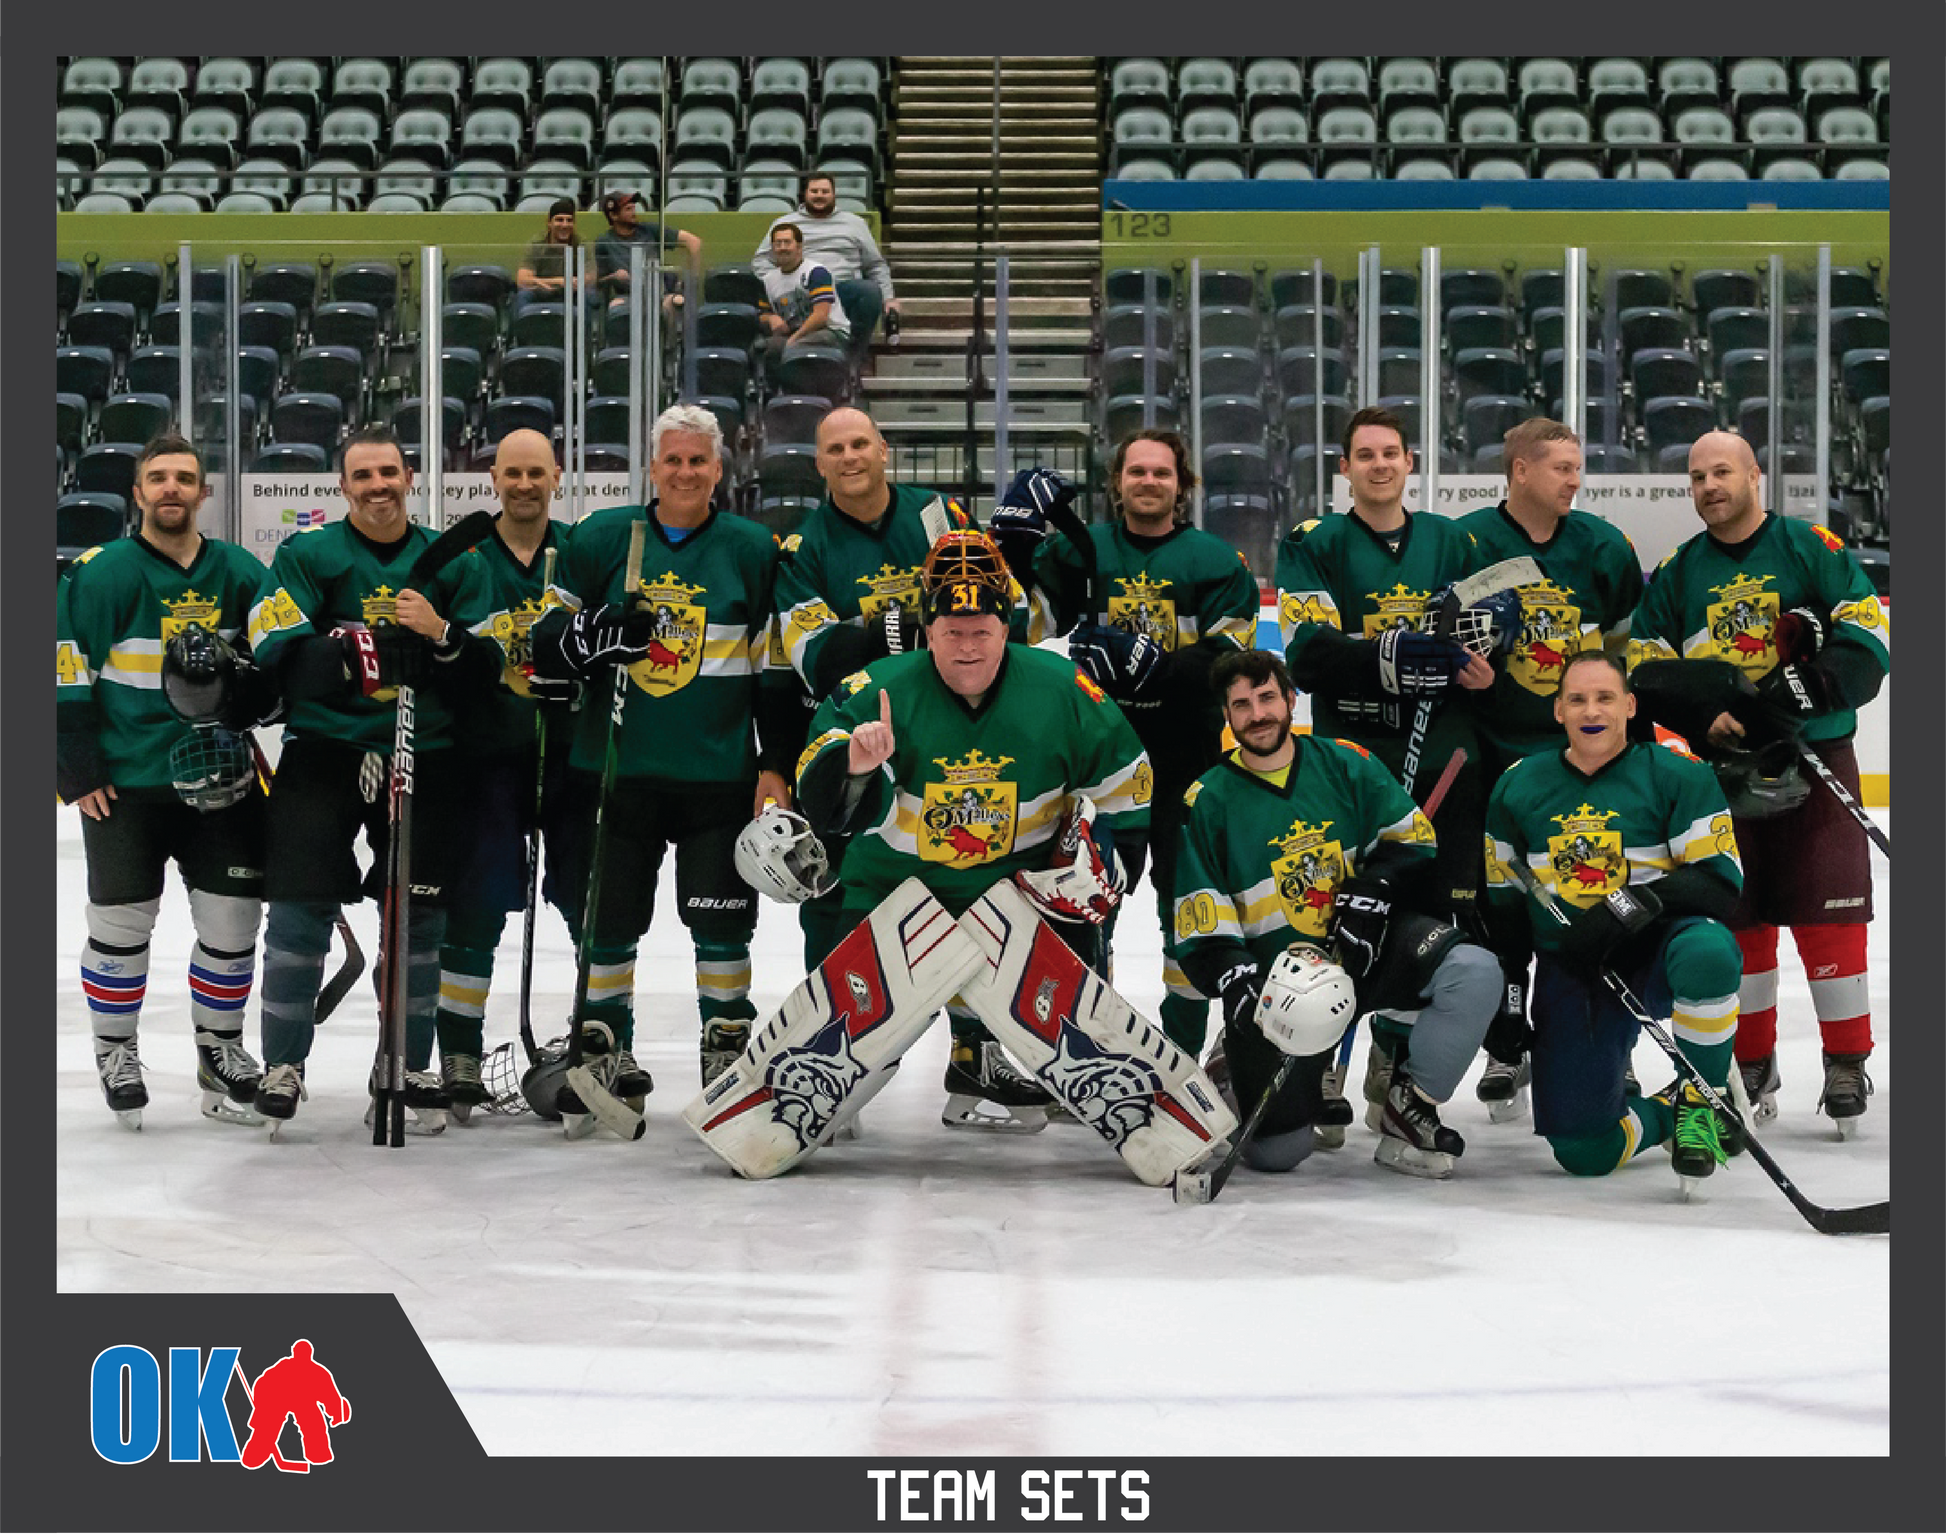 King Shark Ice Hockey Jersey – okgoalie